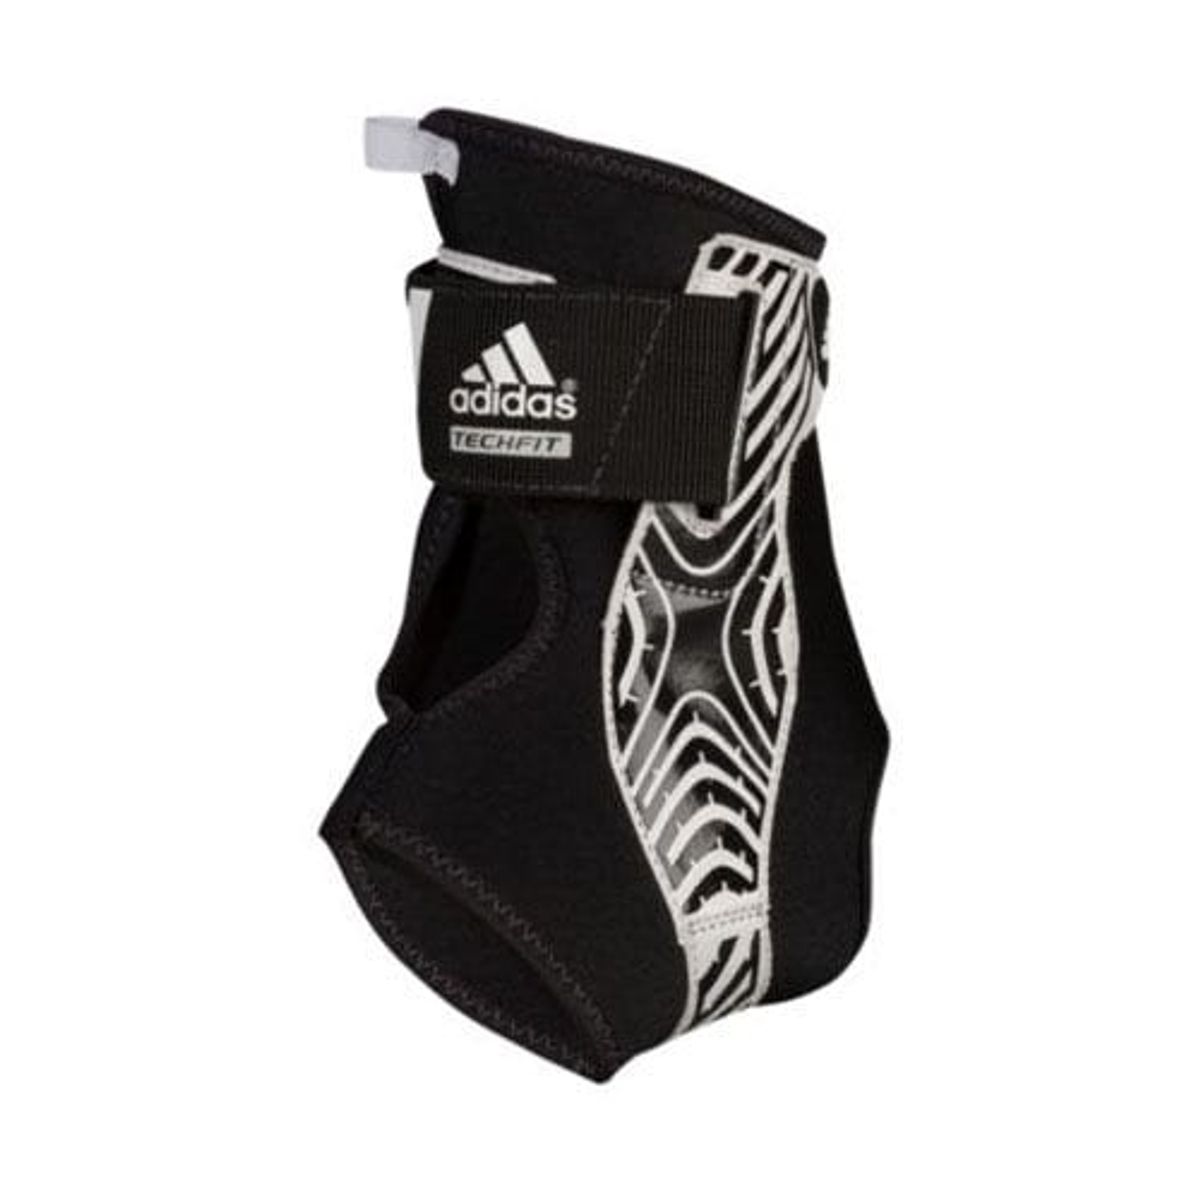 vocaal Fascineren Glans Adidas AdiZero Speedwrap Ankle Brace (Black) | SportsMNL